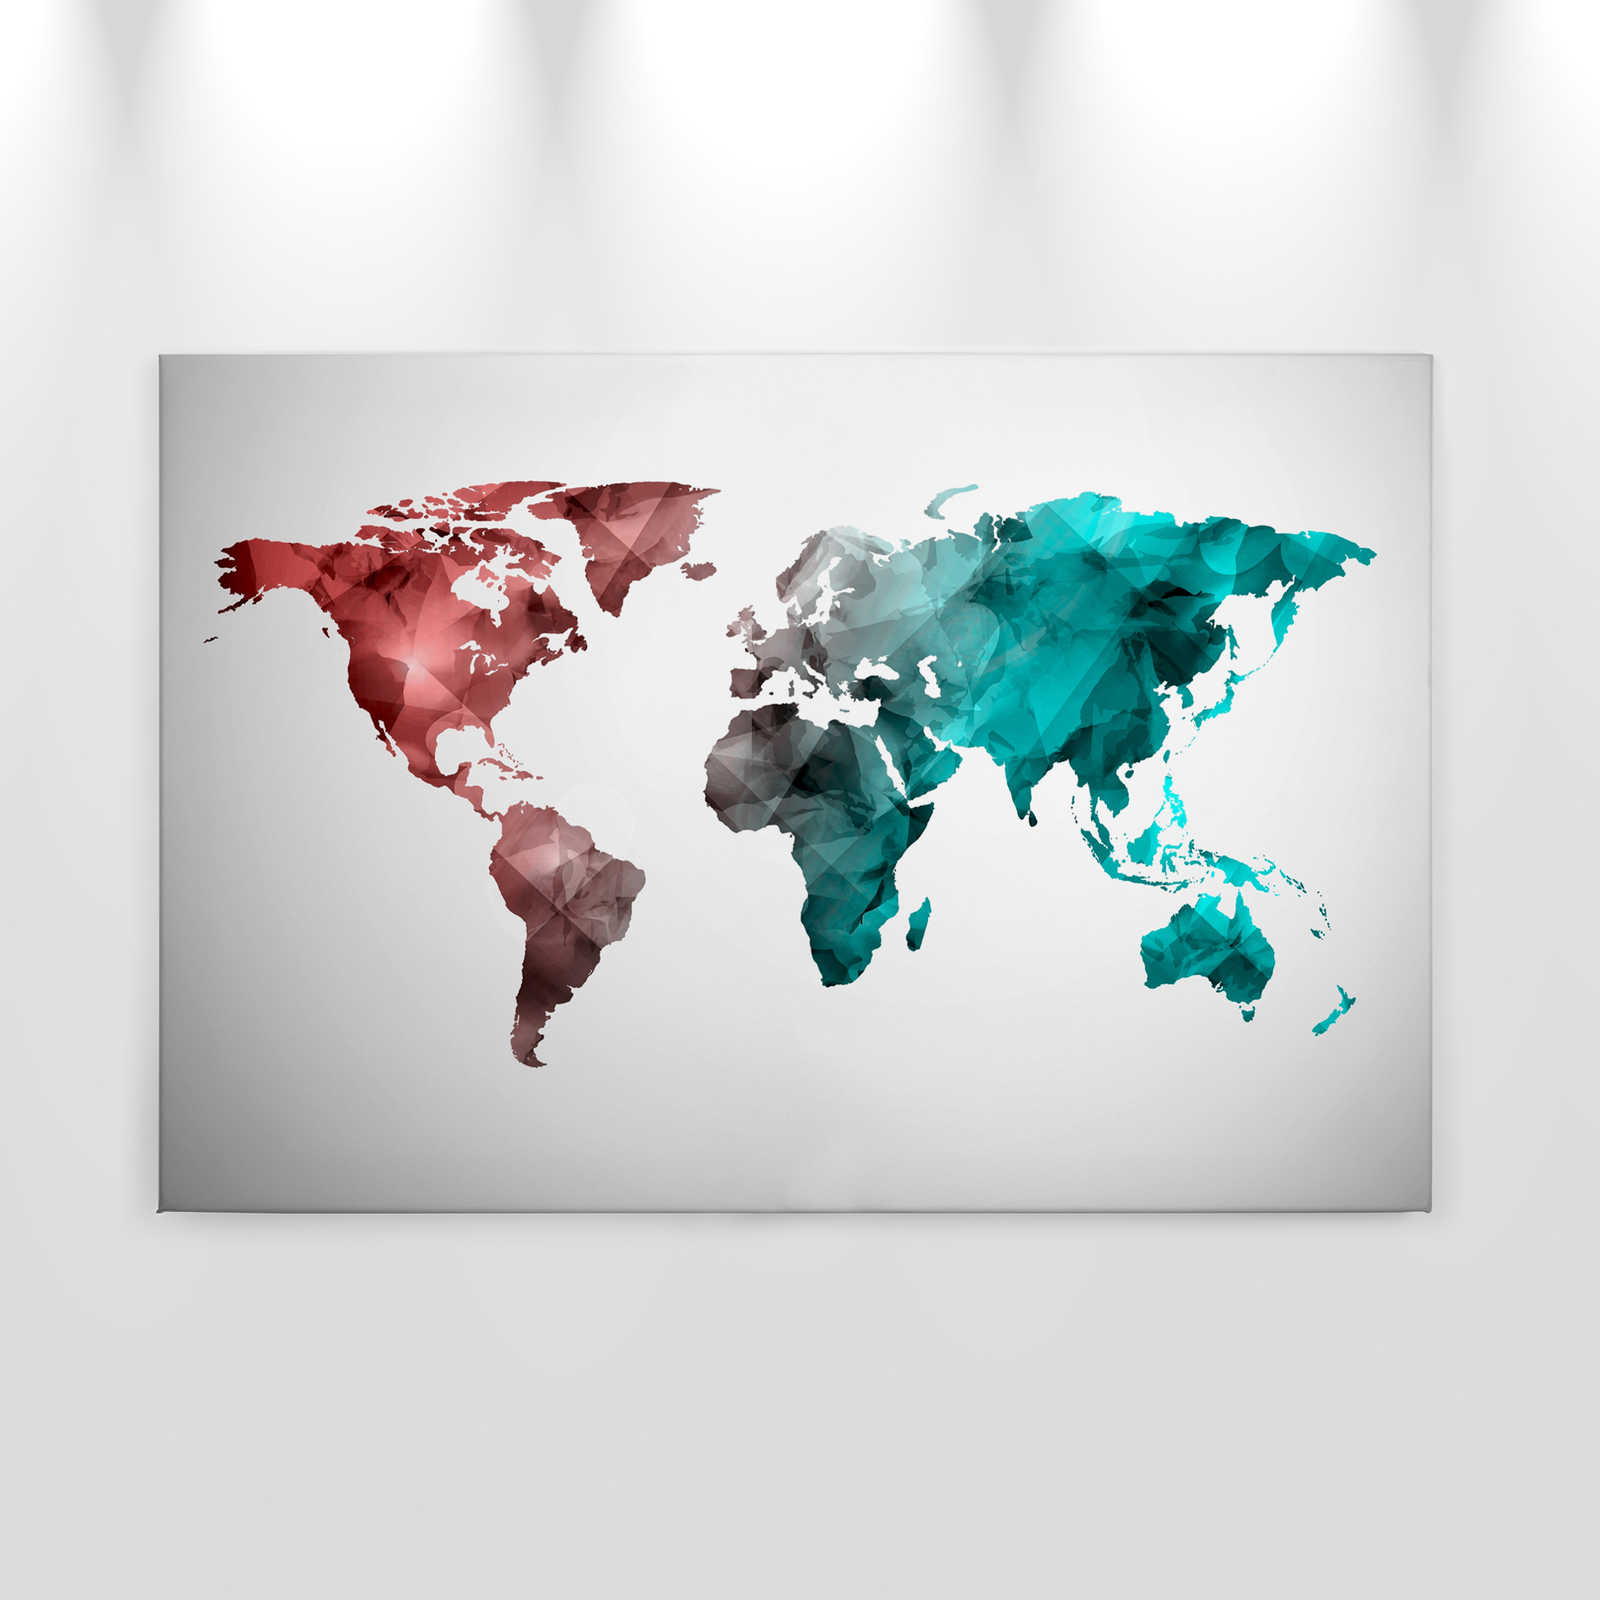             Tela con mappa del mondo realizzata con elementi grafici | WorldGrafic 2 - 0,90 m x 0,60 m
        